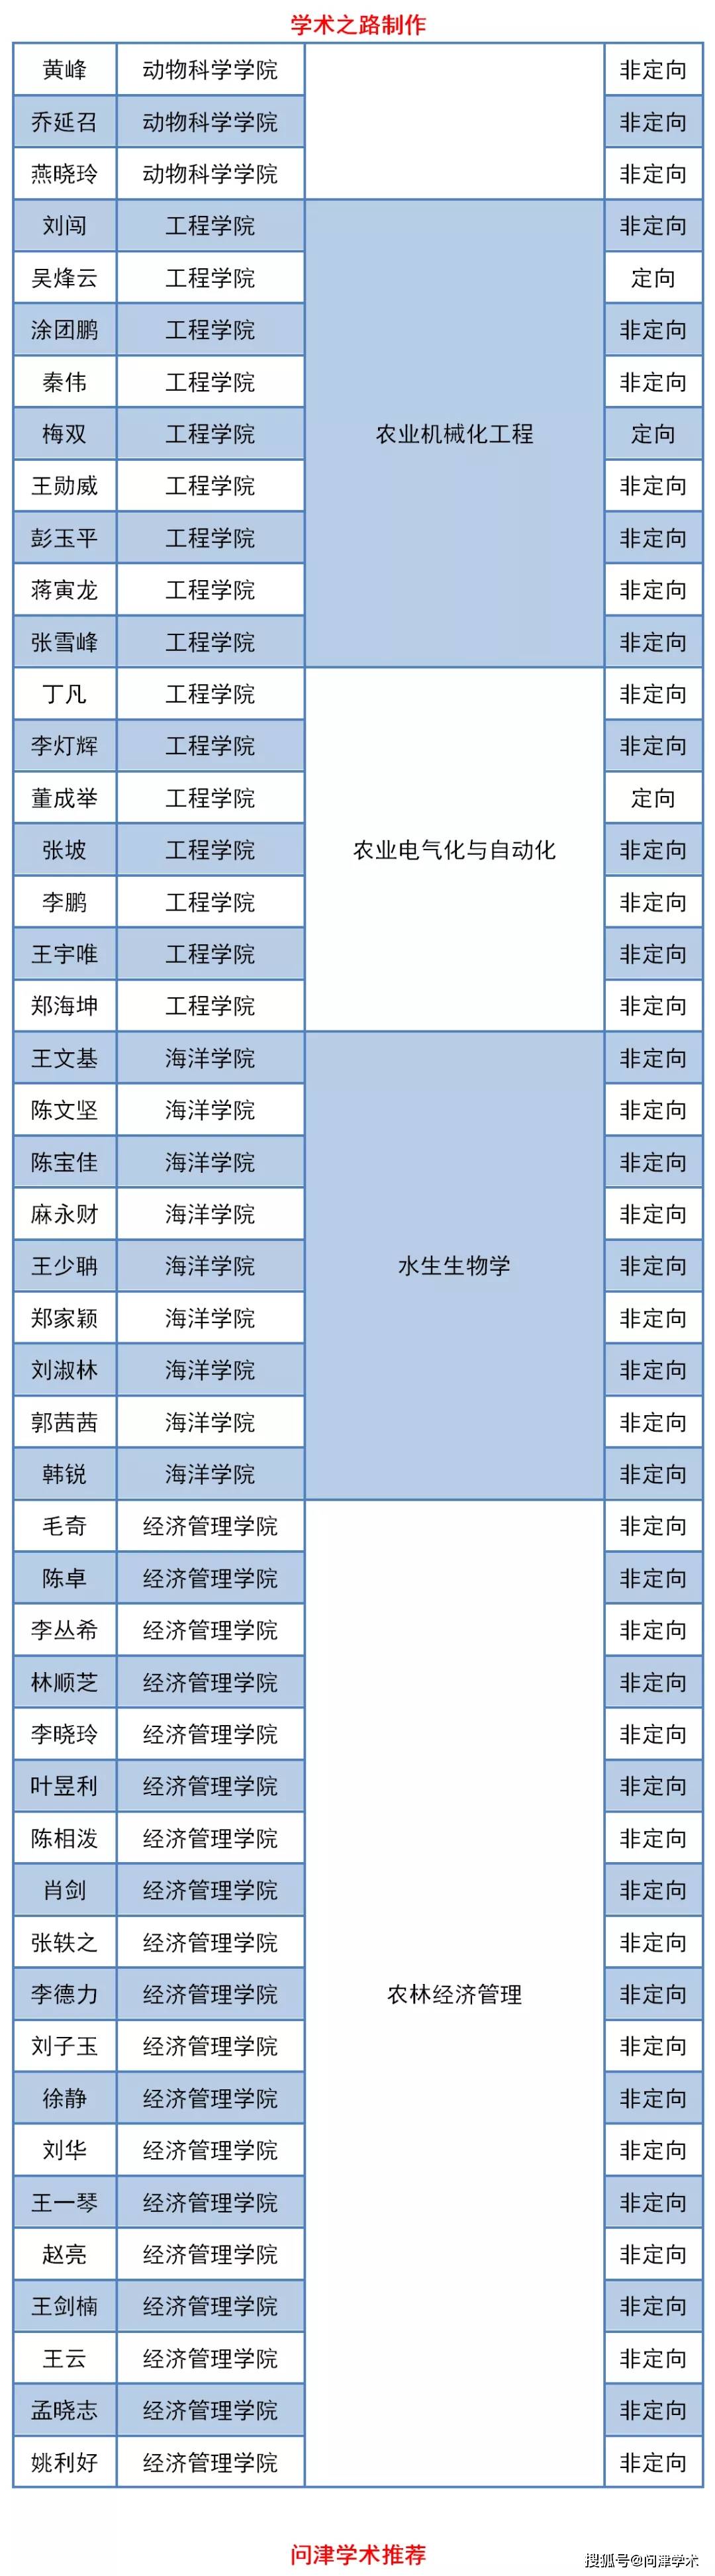 华南农业大学2020年_2020年广东省高校排名:58所高校分7档,深圳